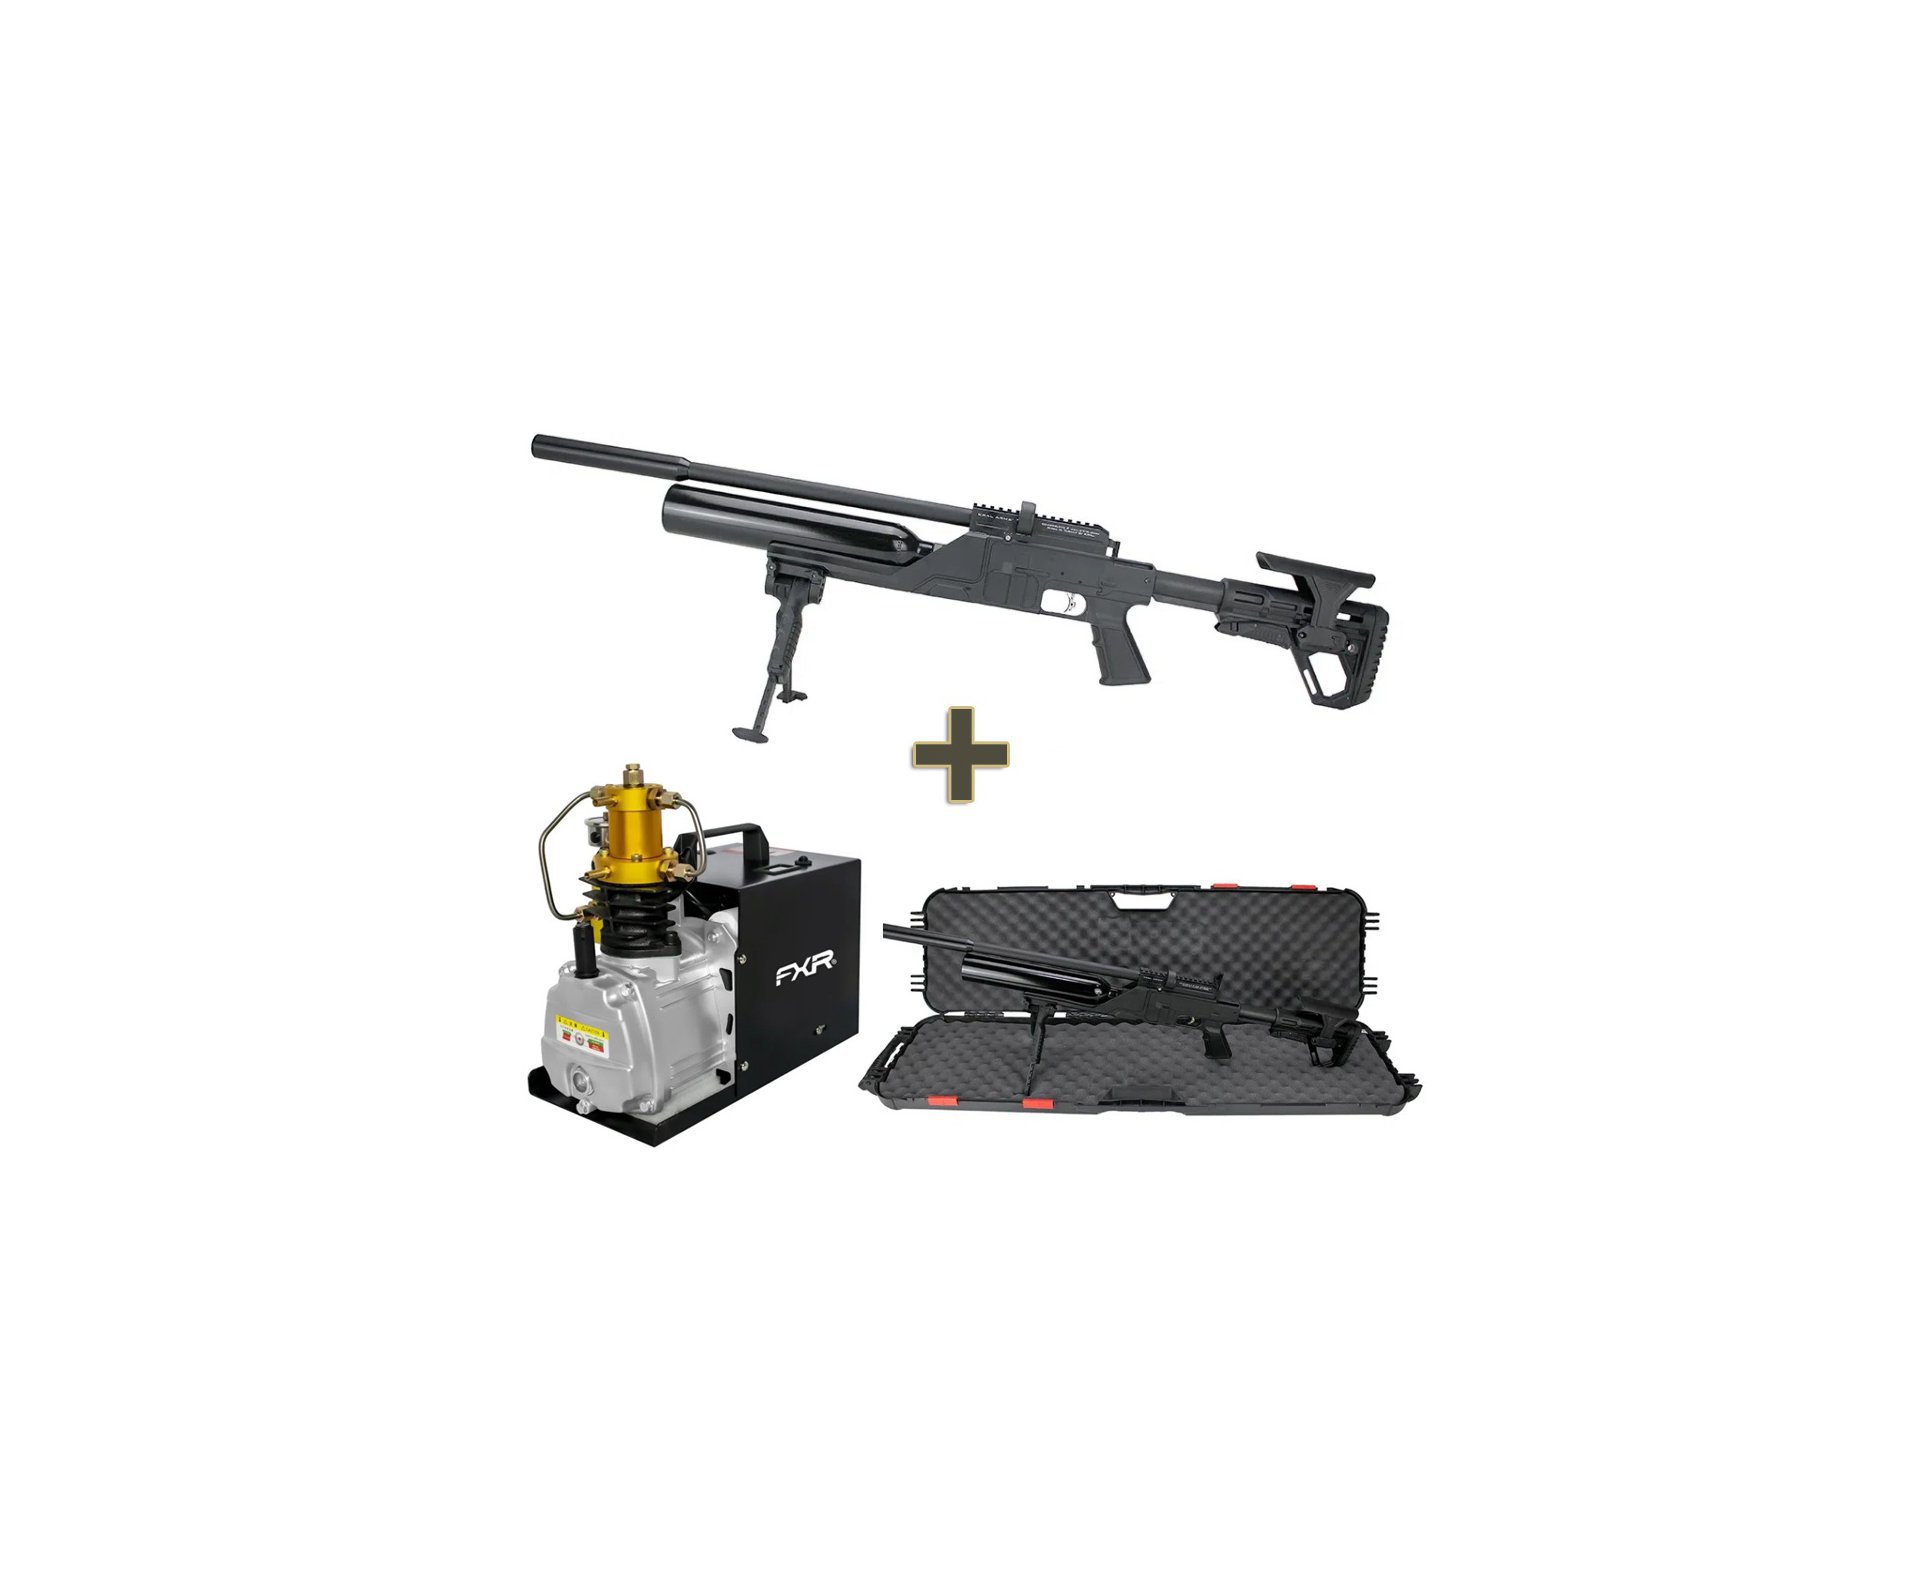 Carabina de Pressão PCP Kral Puncher NP-500 S 5,5mm - FXR + Compressor para PCP e Cilindros de Scuba até 4500PSI 300Bar 30MPA 110V - FXR Arms